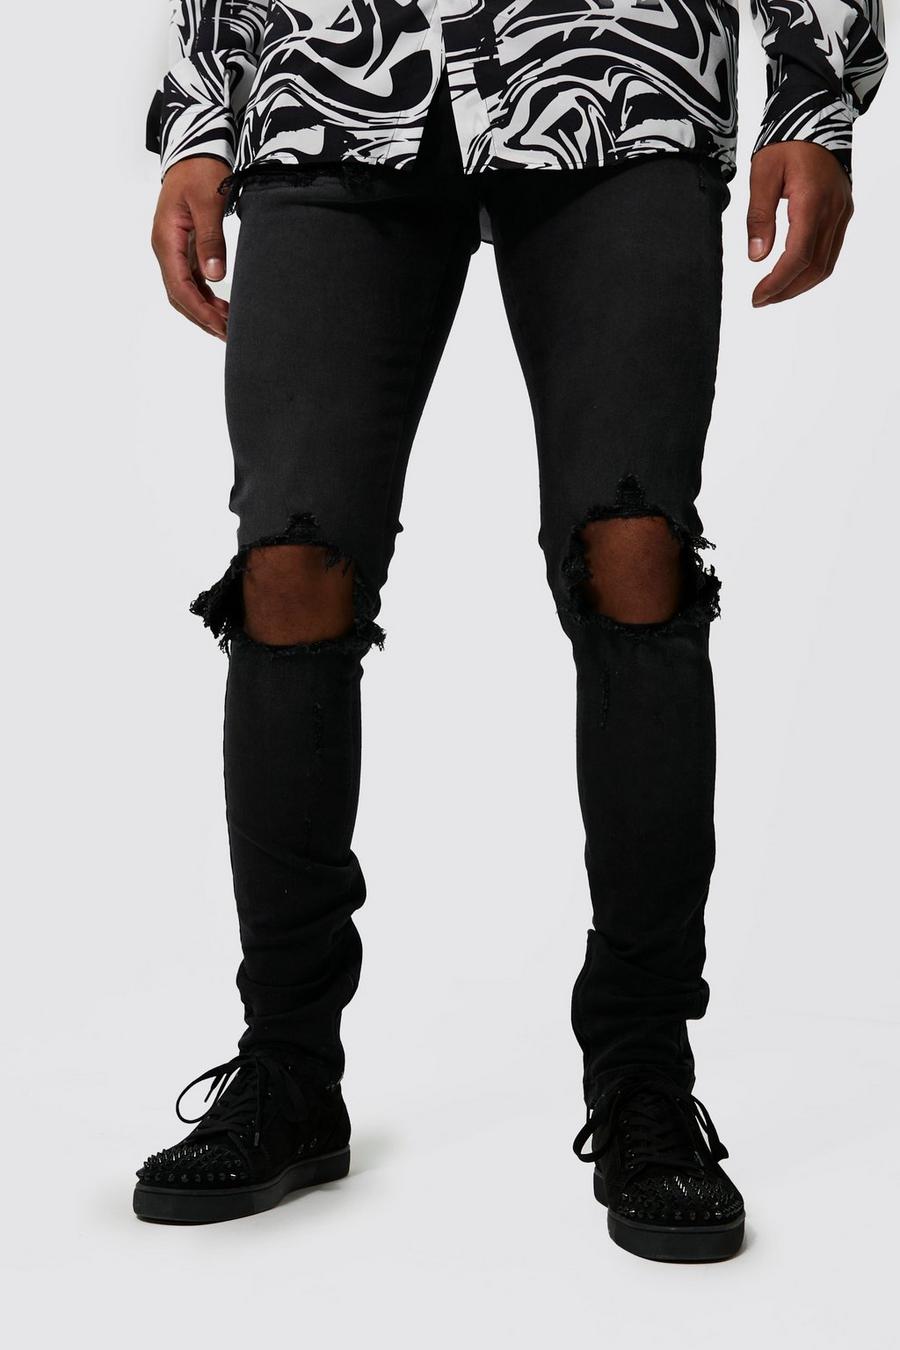 Jeans Tall Skinny Fit effetto consumato con dettagli stile Biker, Black negro